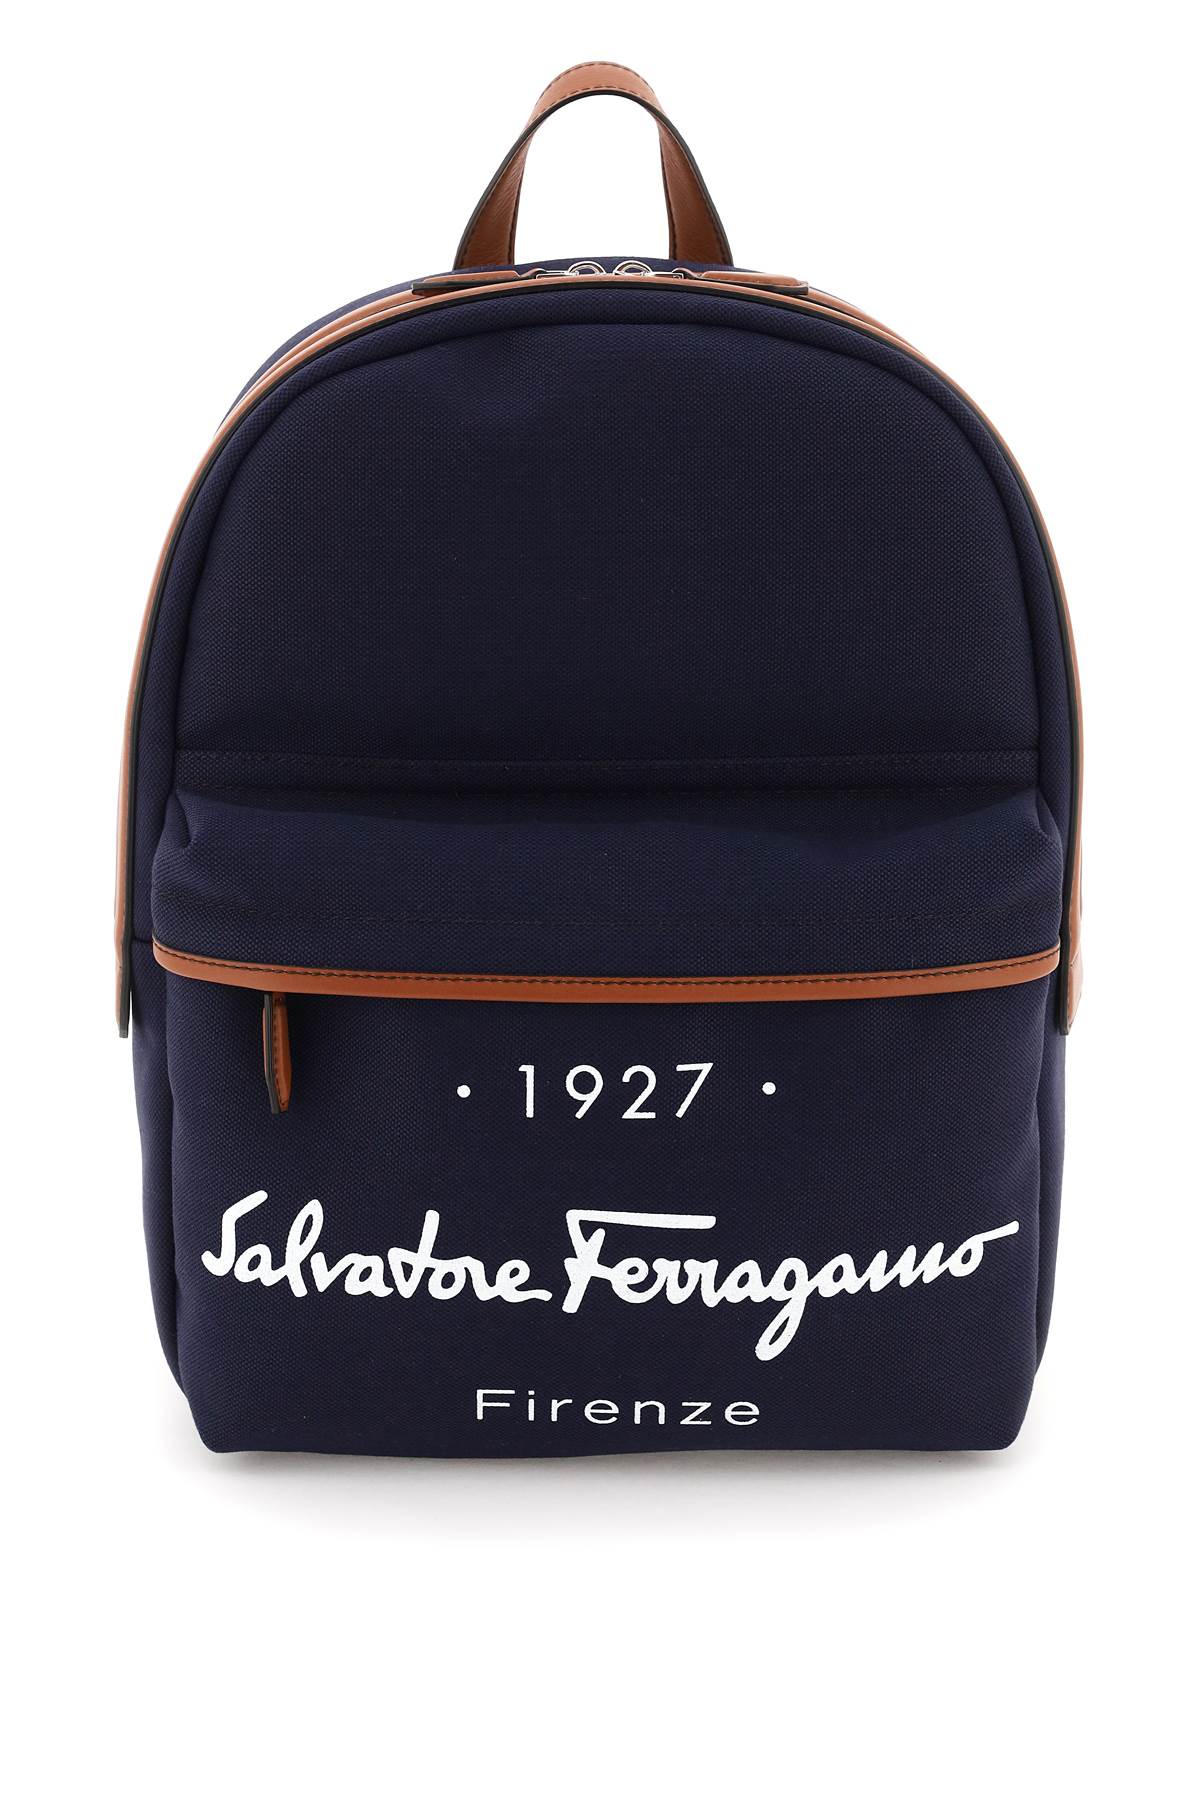 Salvatore Ferragamo 1927 Signature Backpack